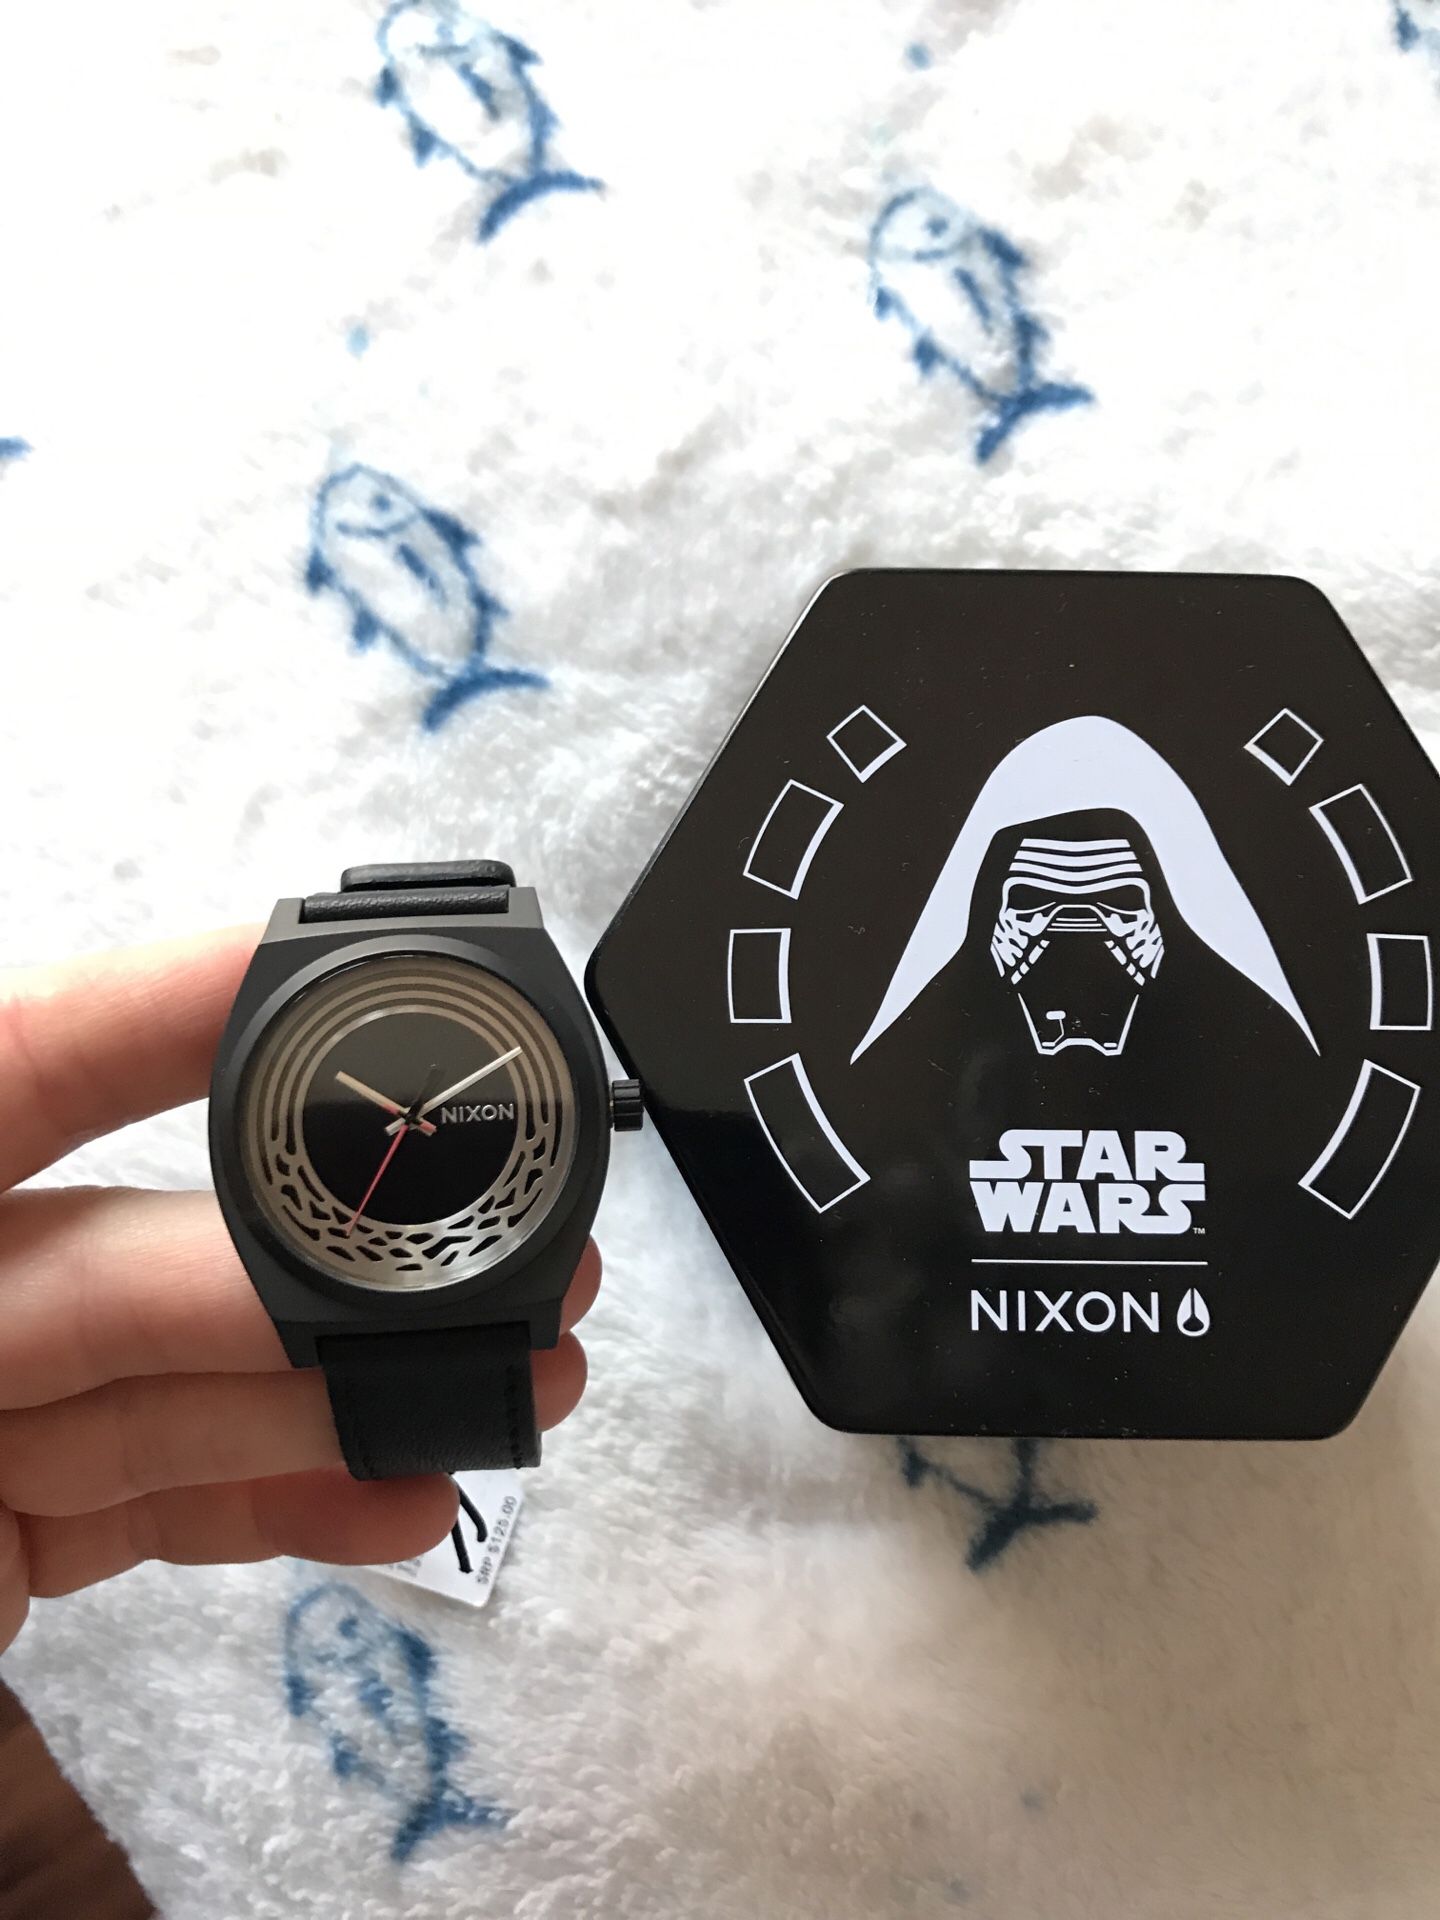 Star Wars Nixon